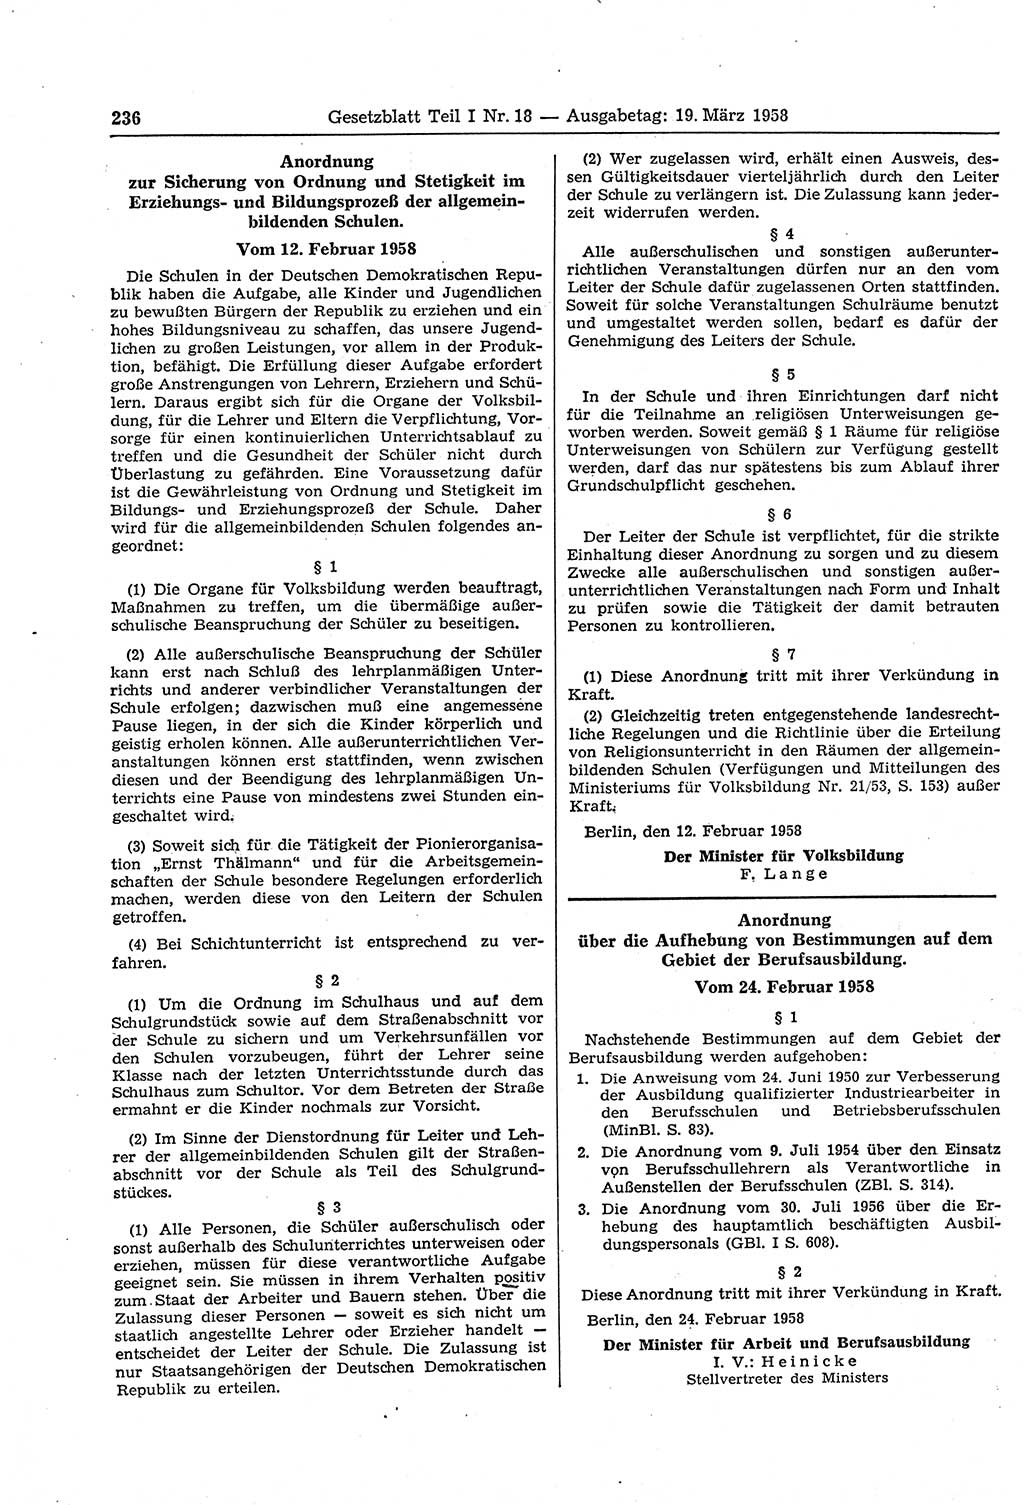 Gesetzblatt (GBl.) der Deutschen Demokratischen Republik (DDR) Teil Ⅰ 1958, Seite 236 (GBl. DDR Ⅰ 1958, S. 236)